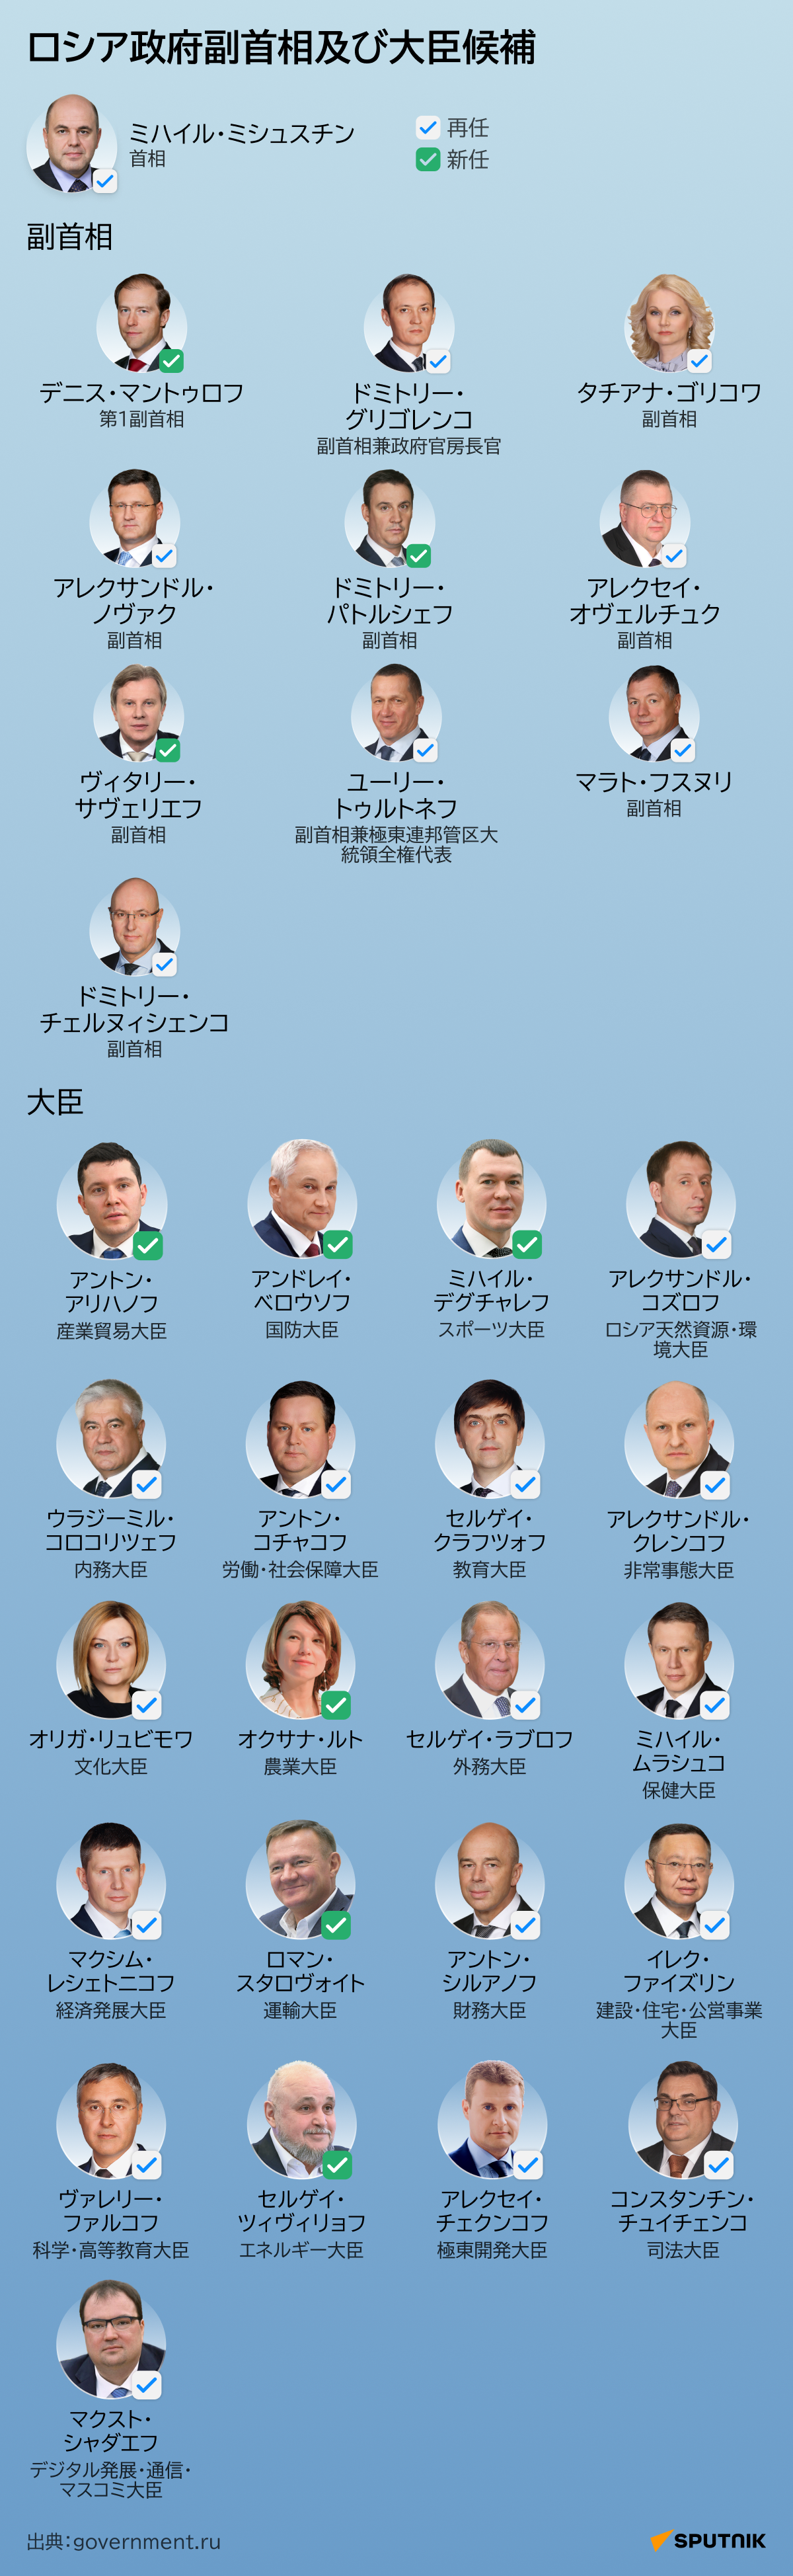 ロシア政府副首相及び大臣候補 - Sputnik 日本